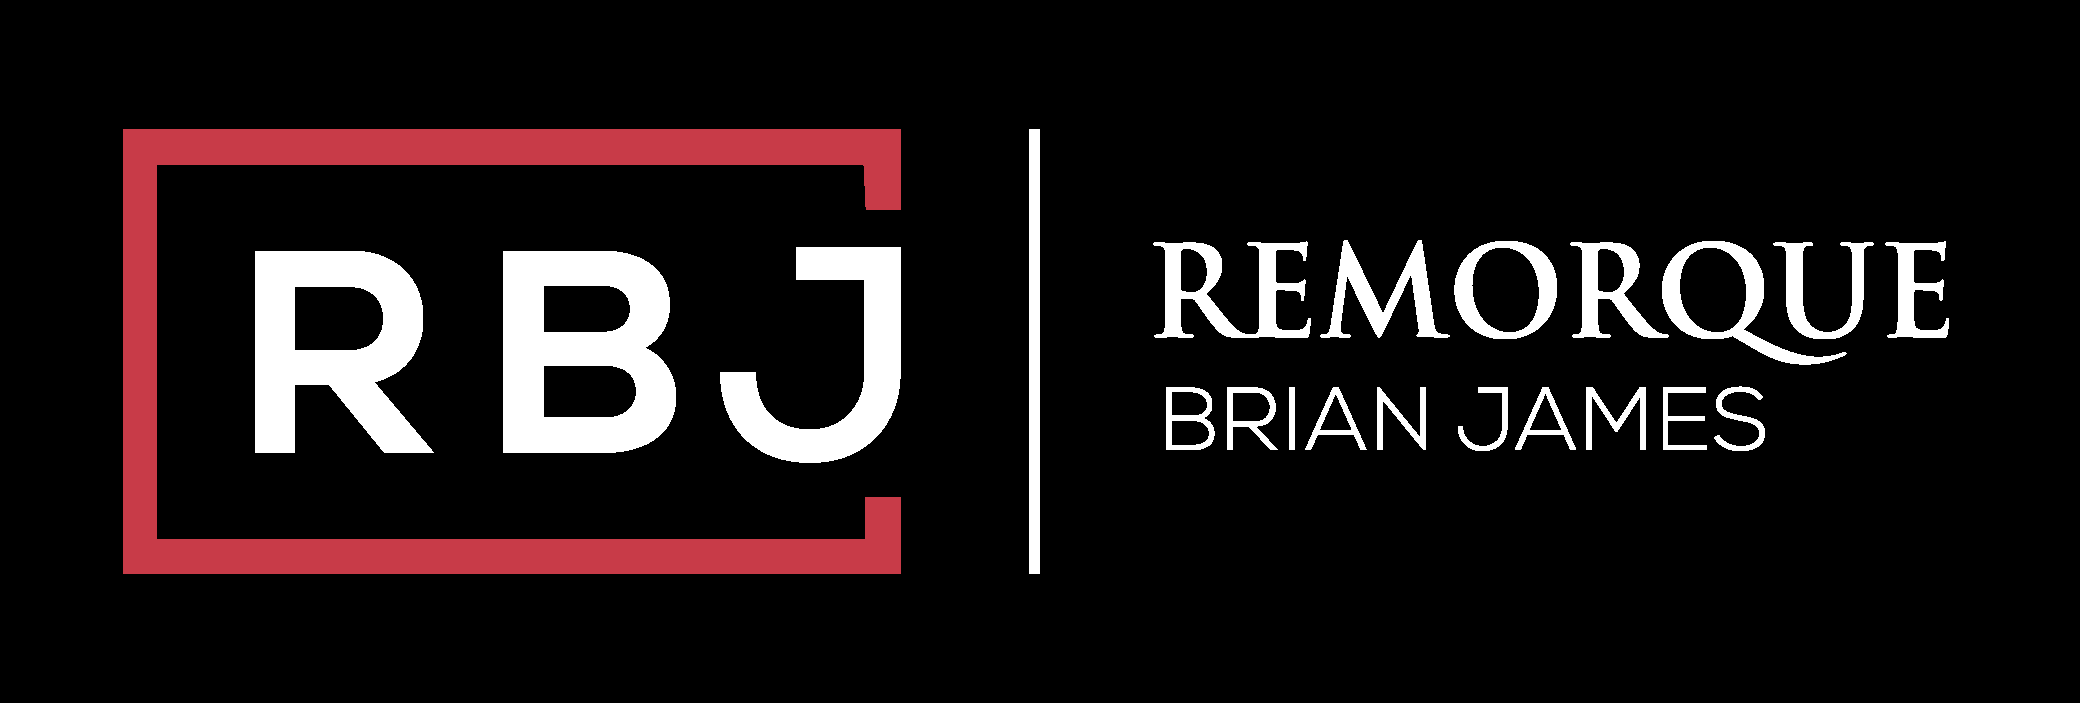 REMORQUE BRIAN JAMES TRAILERS